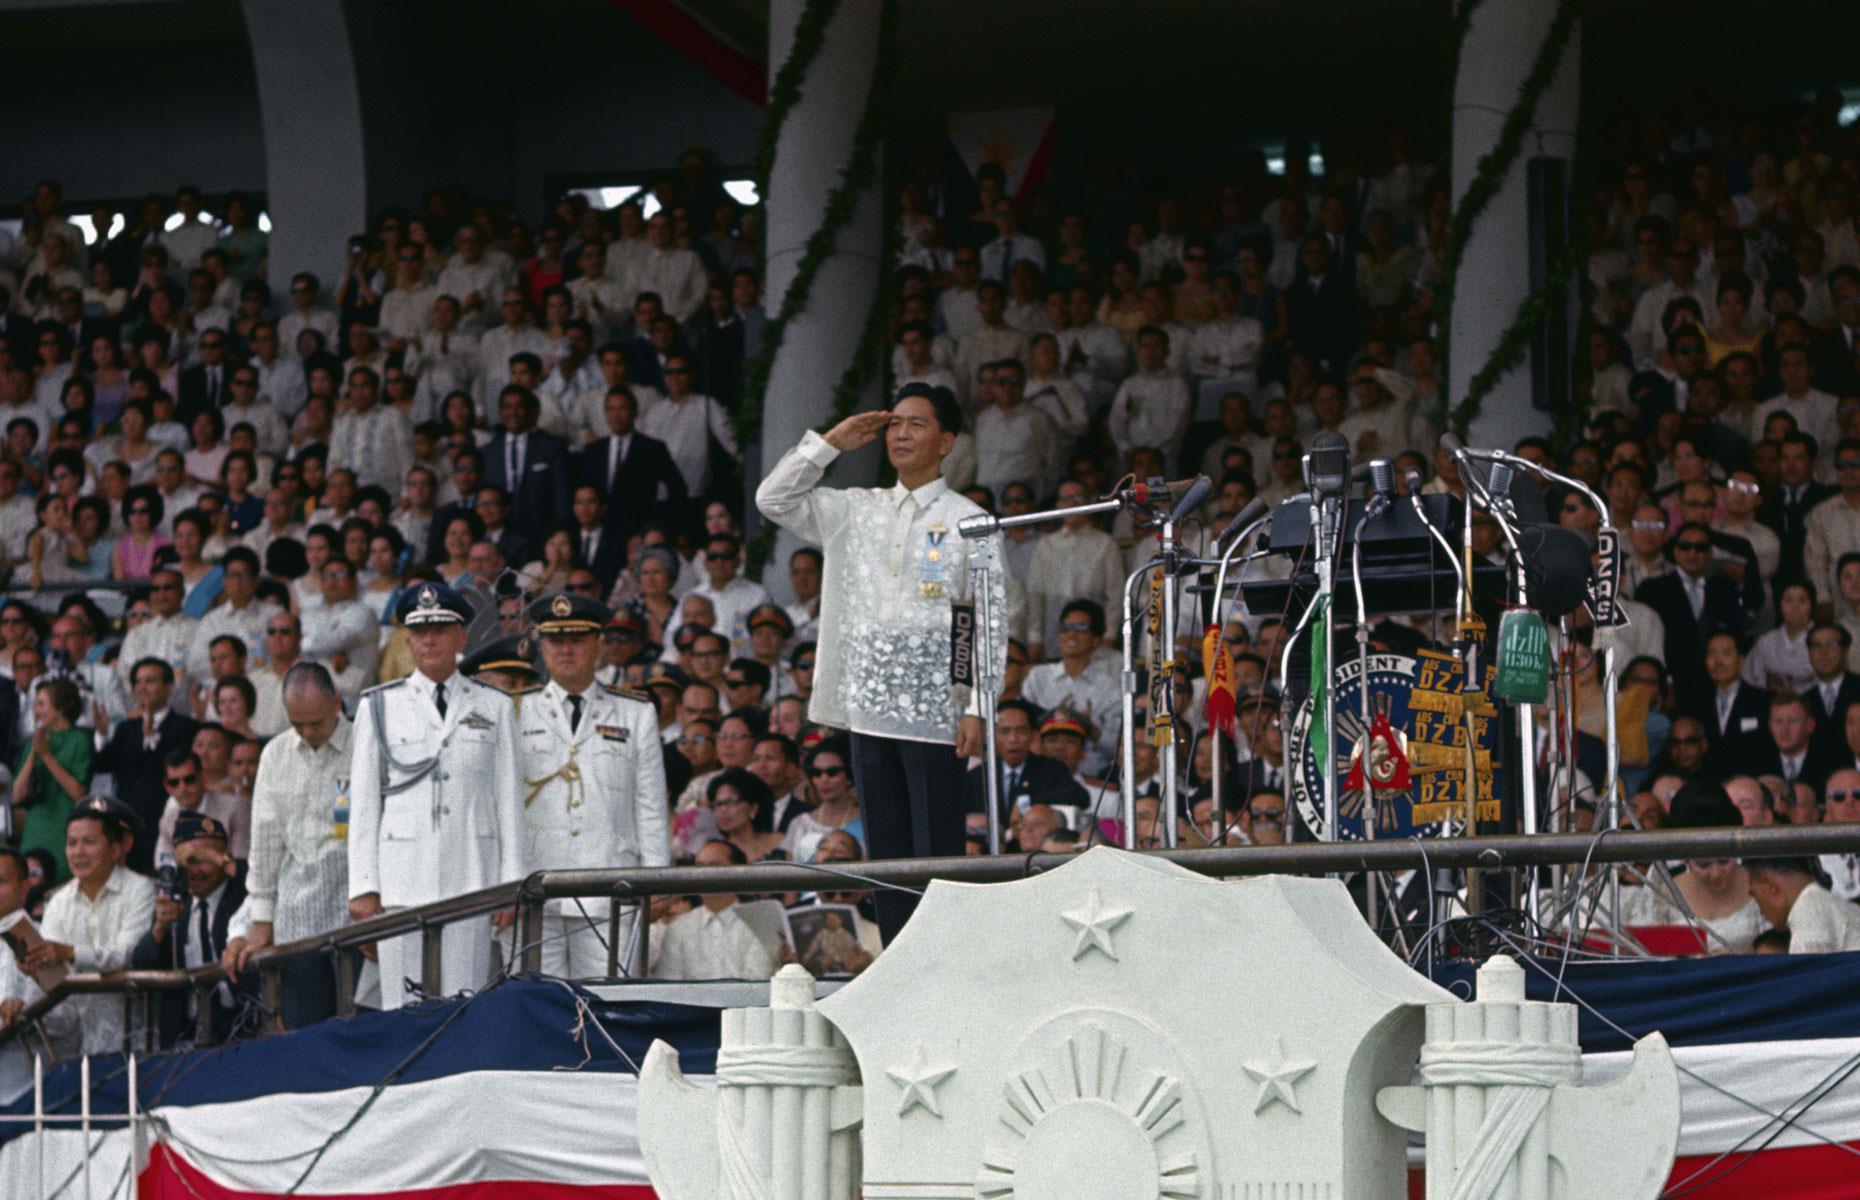 Ferdinand Marcos' first term